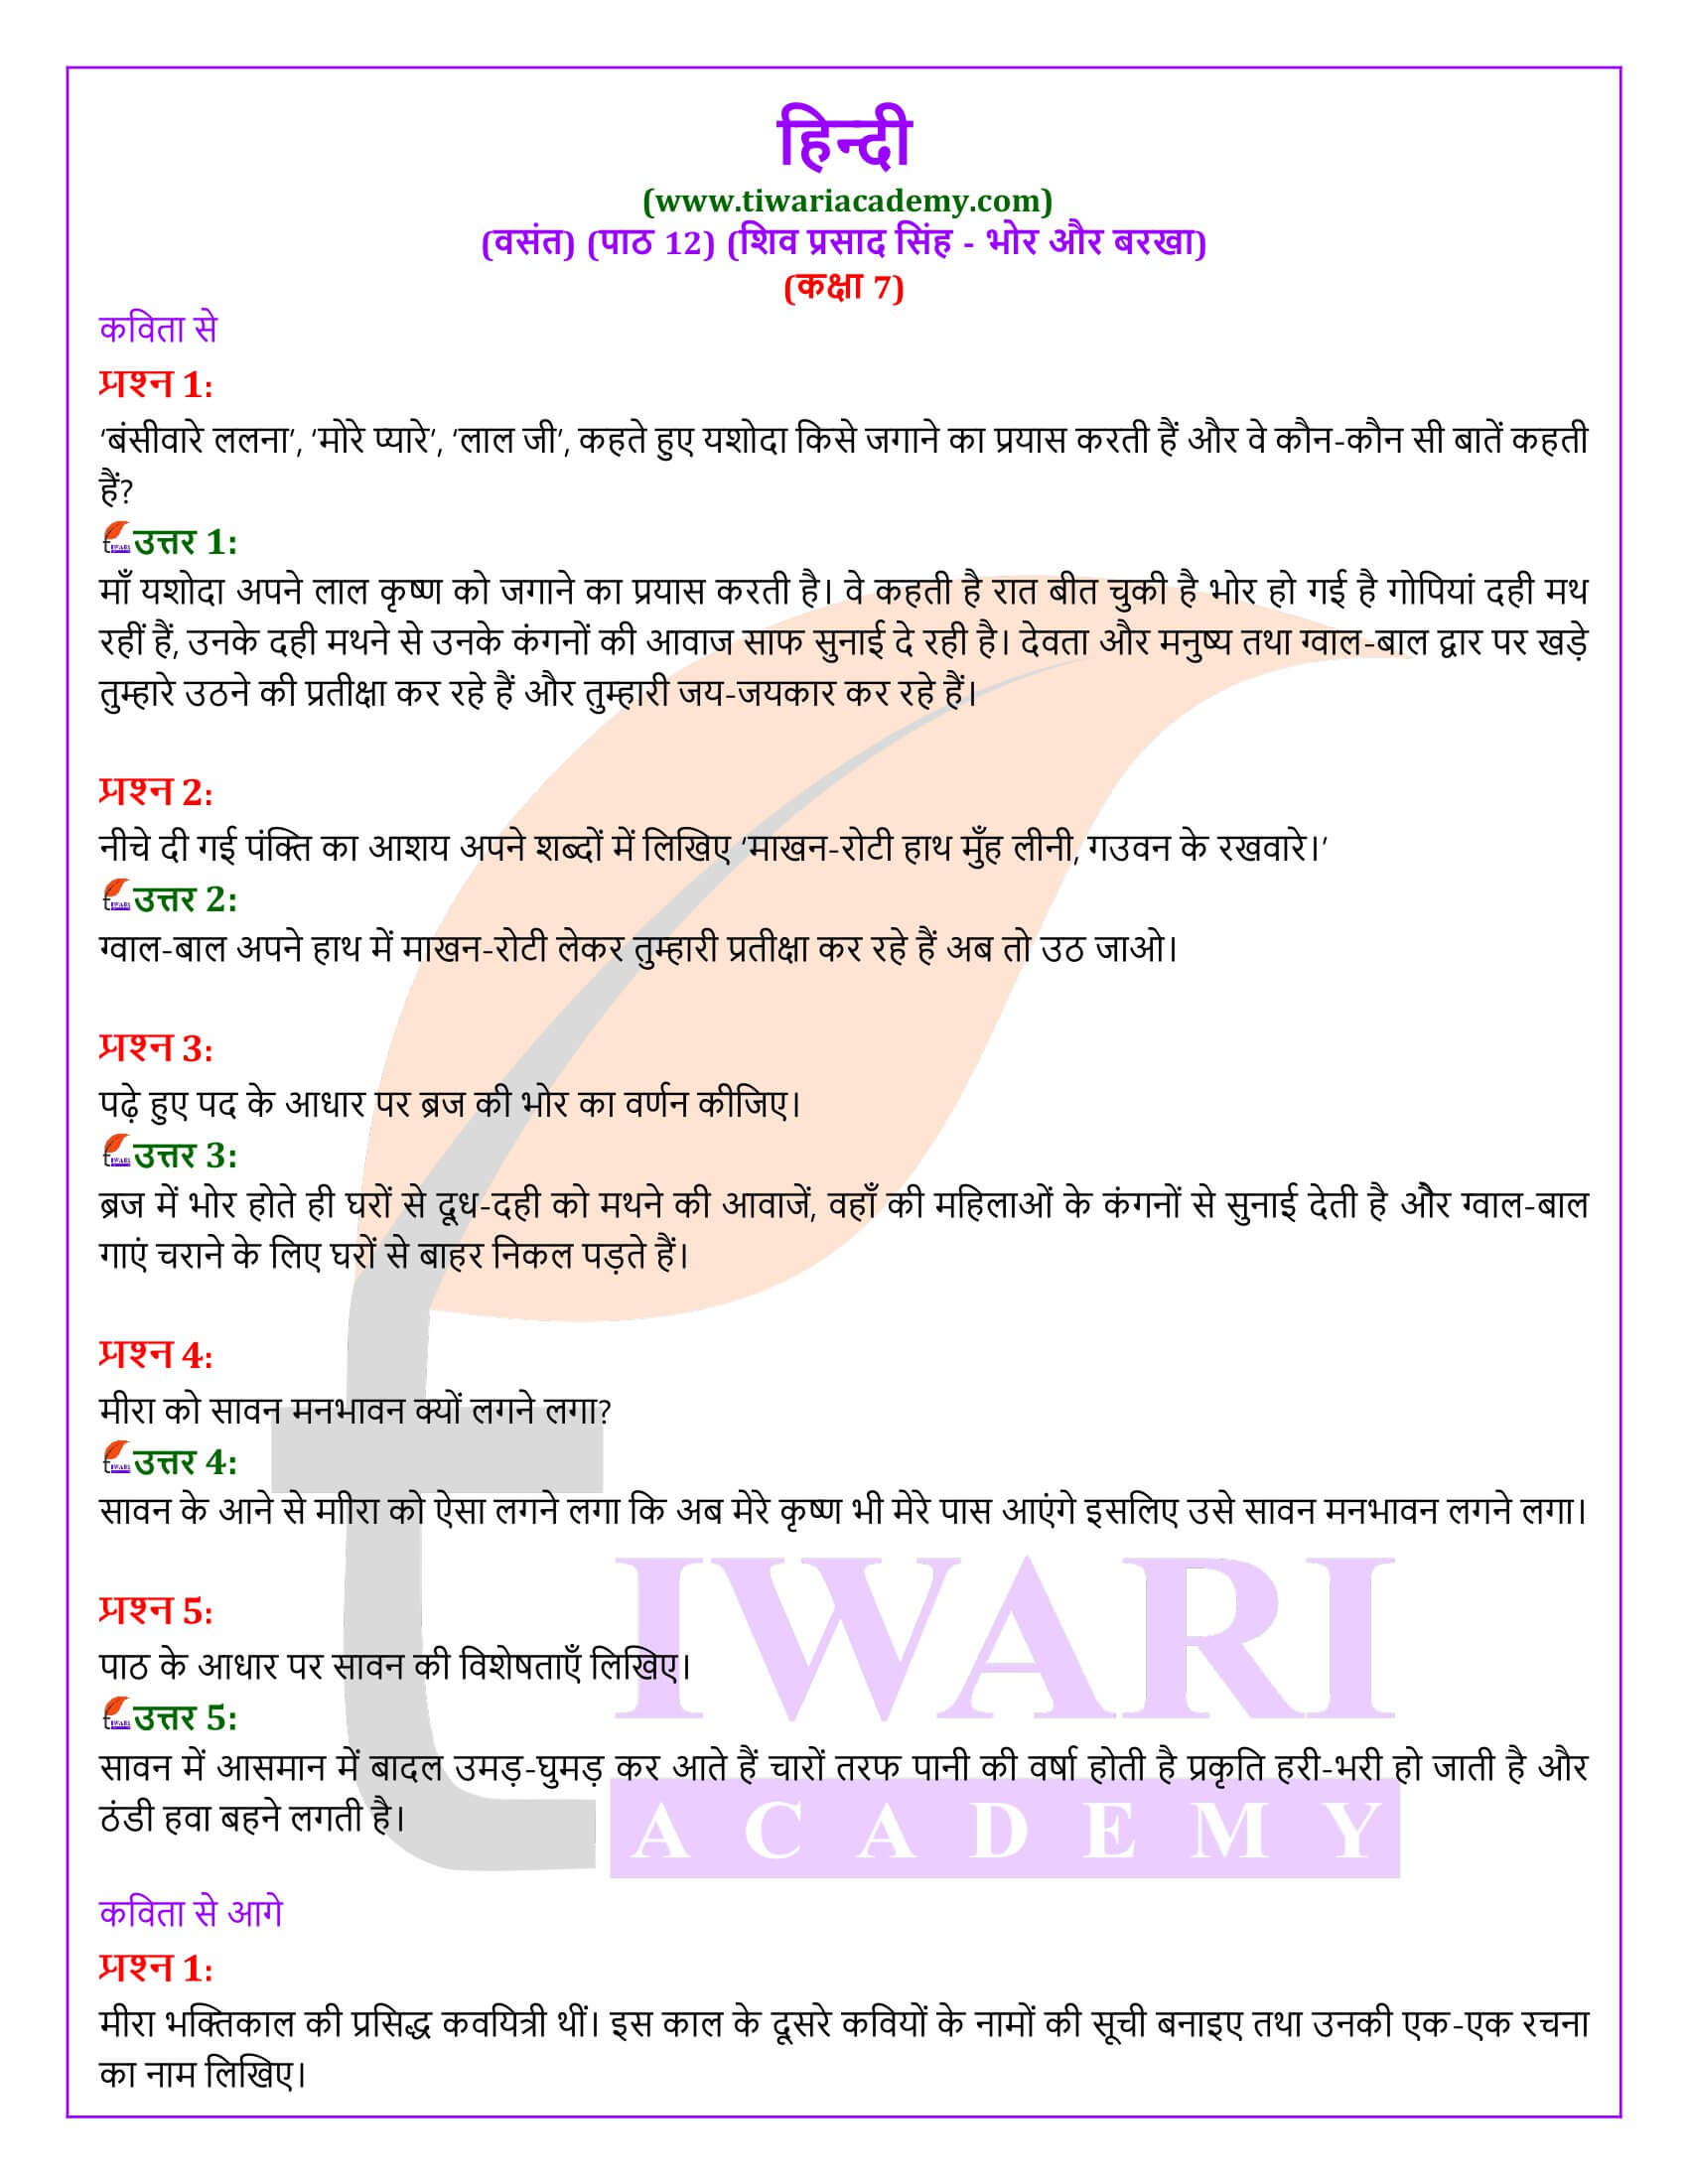 कक्षा 7 हिंदी वसंत अध्याय 12 भोर और बरखा के प्रश्न उत्तर